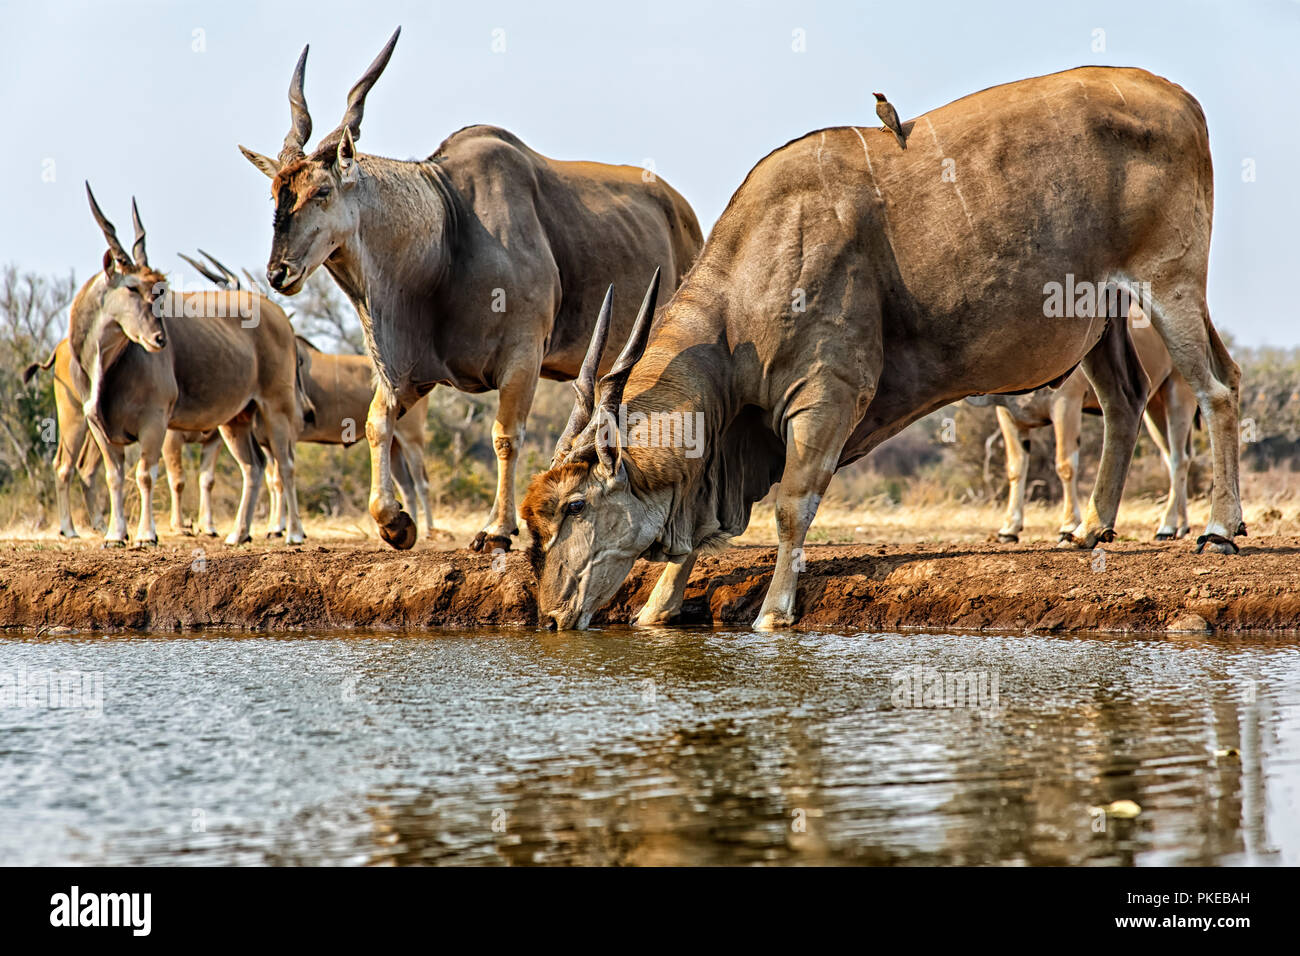 Eland (Taurotragus oryx) drinking water; Mashatu, Botswana Stock Photo